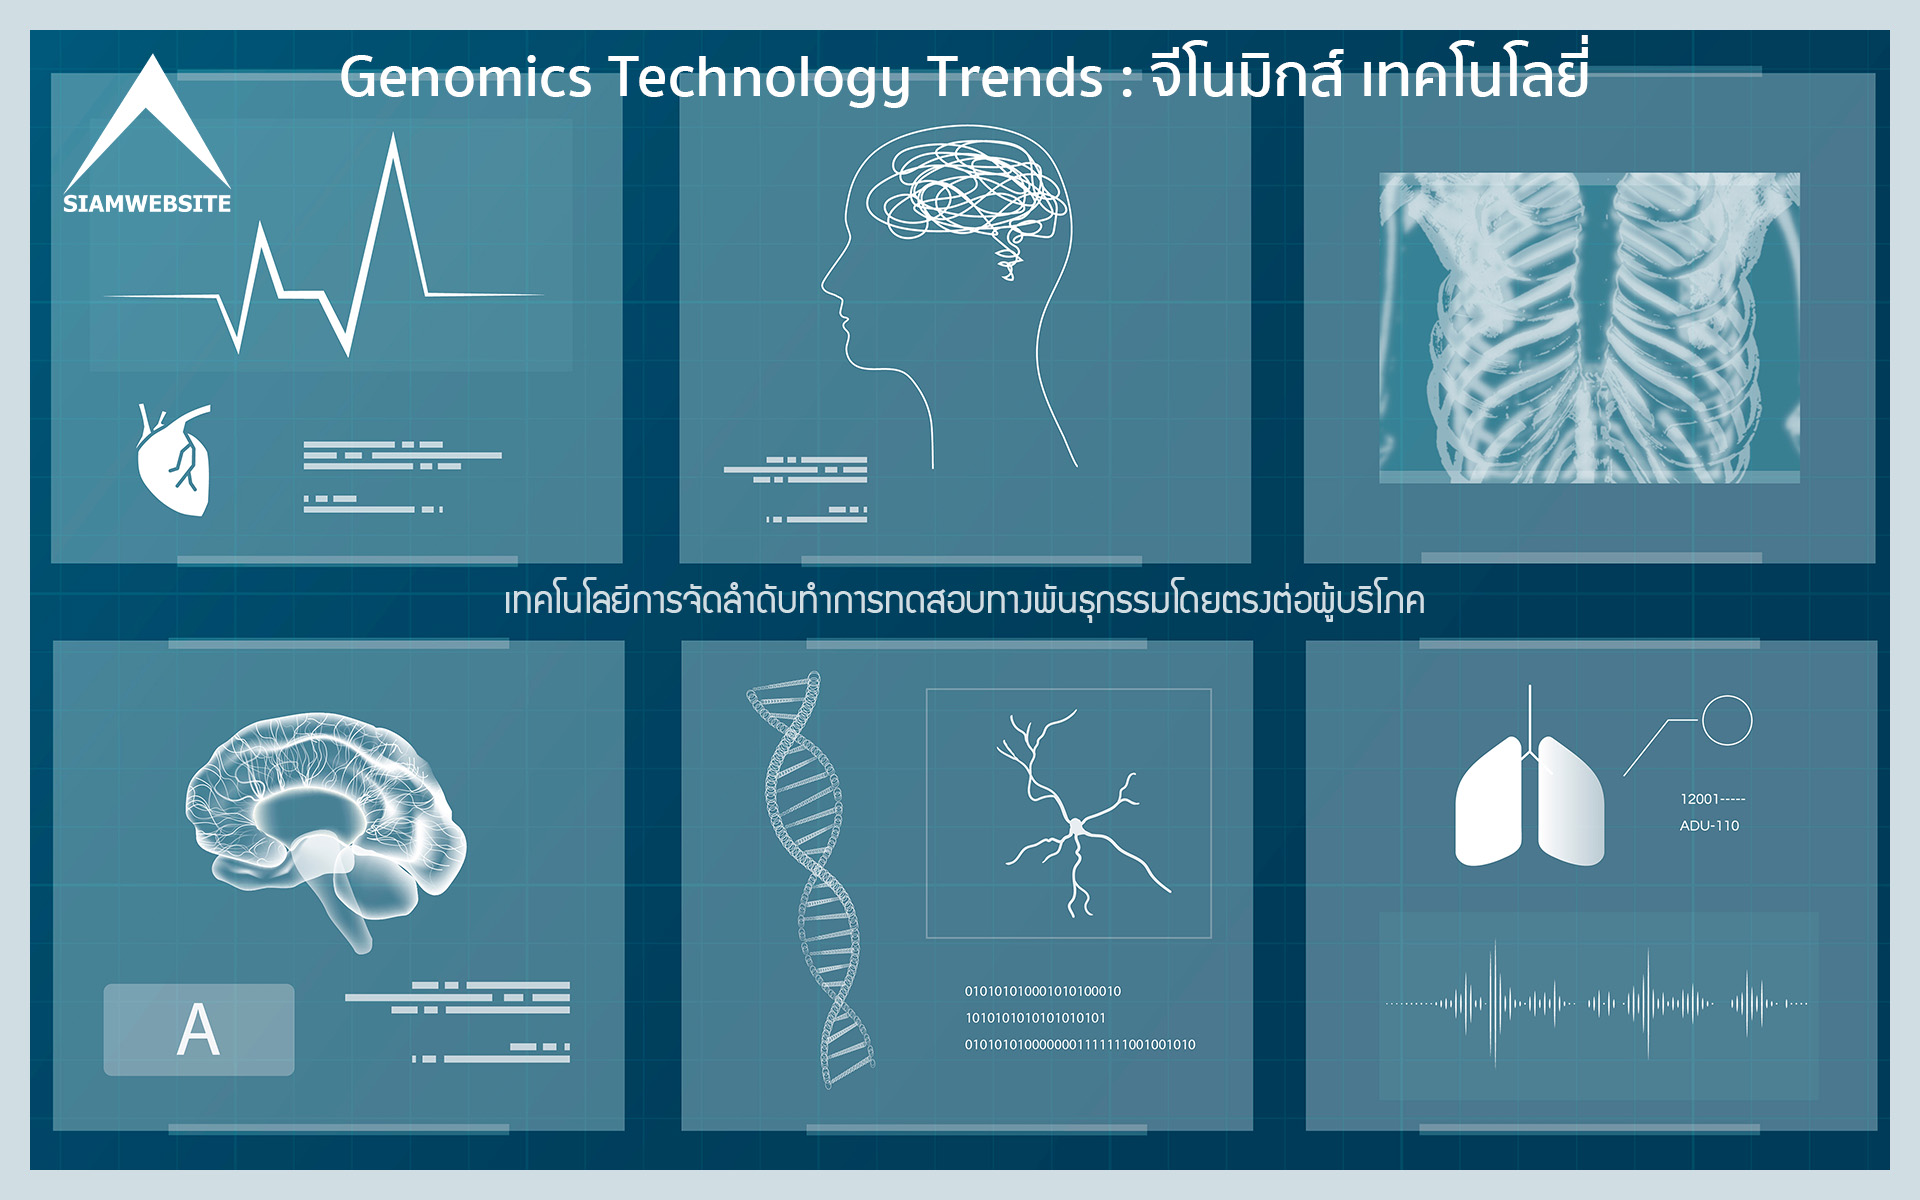 Genomics Technology Trends : จีโนมิกส์ เทคโนโลยี่ บทความ ข่าวสาร rampagesoft